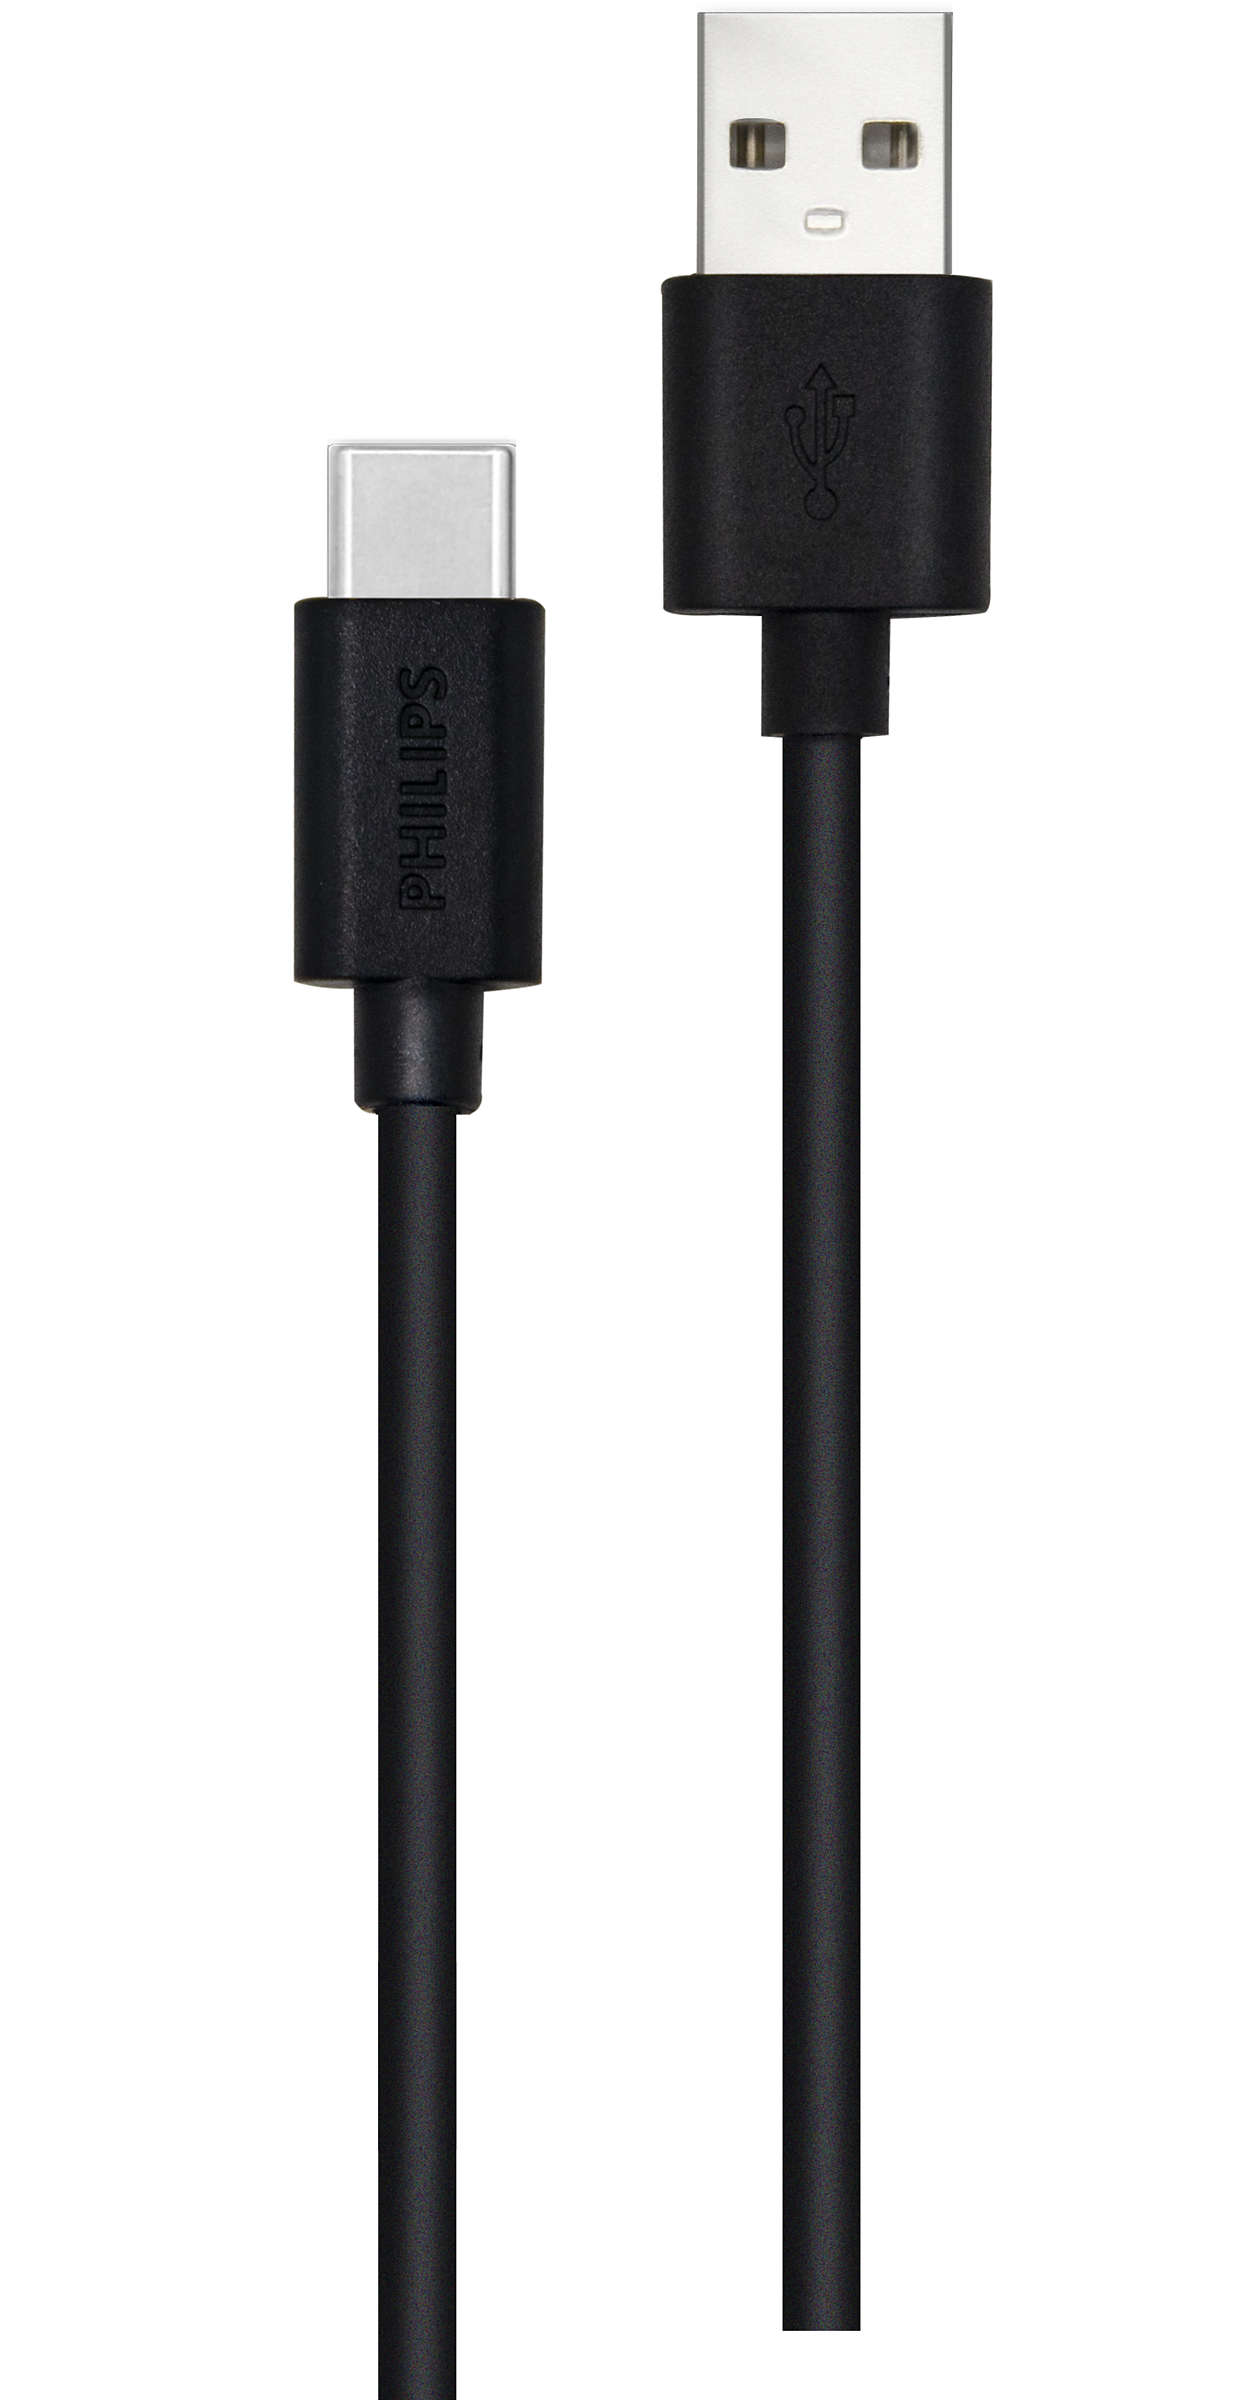 Kabel USB-A ke USB-C 1,2 m